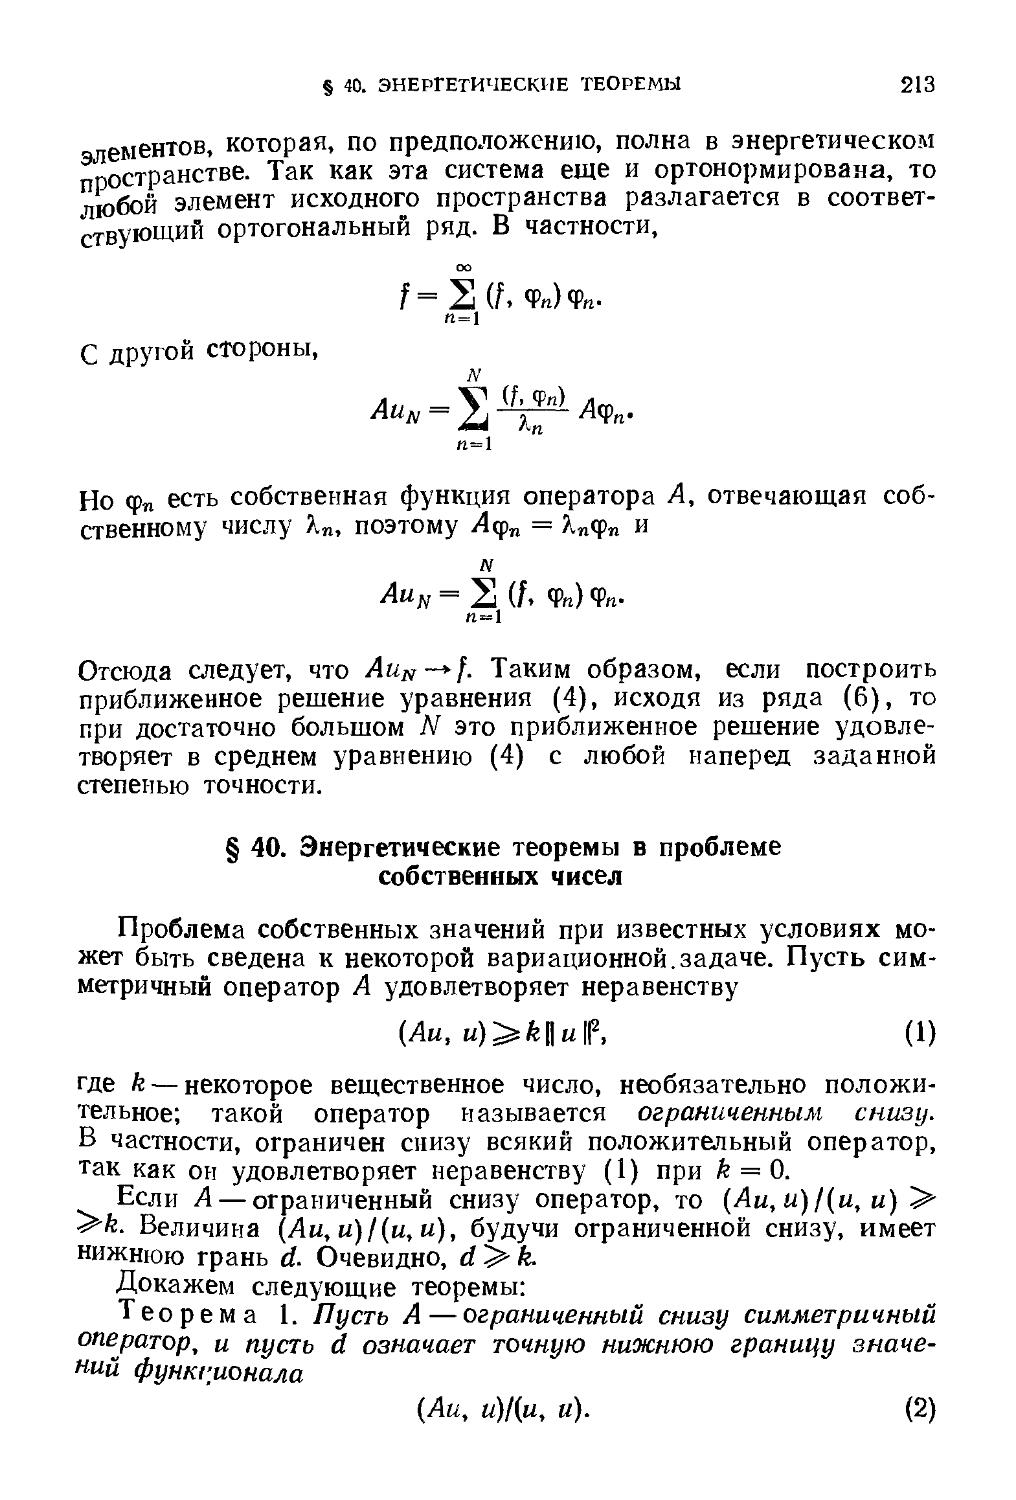 § 40. Энергетические теоремы в проблеме собственных чисел